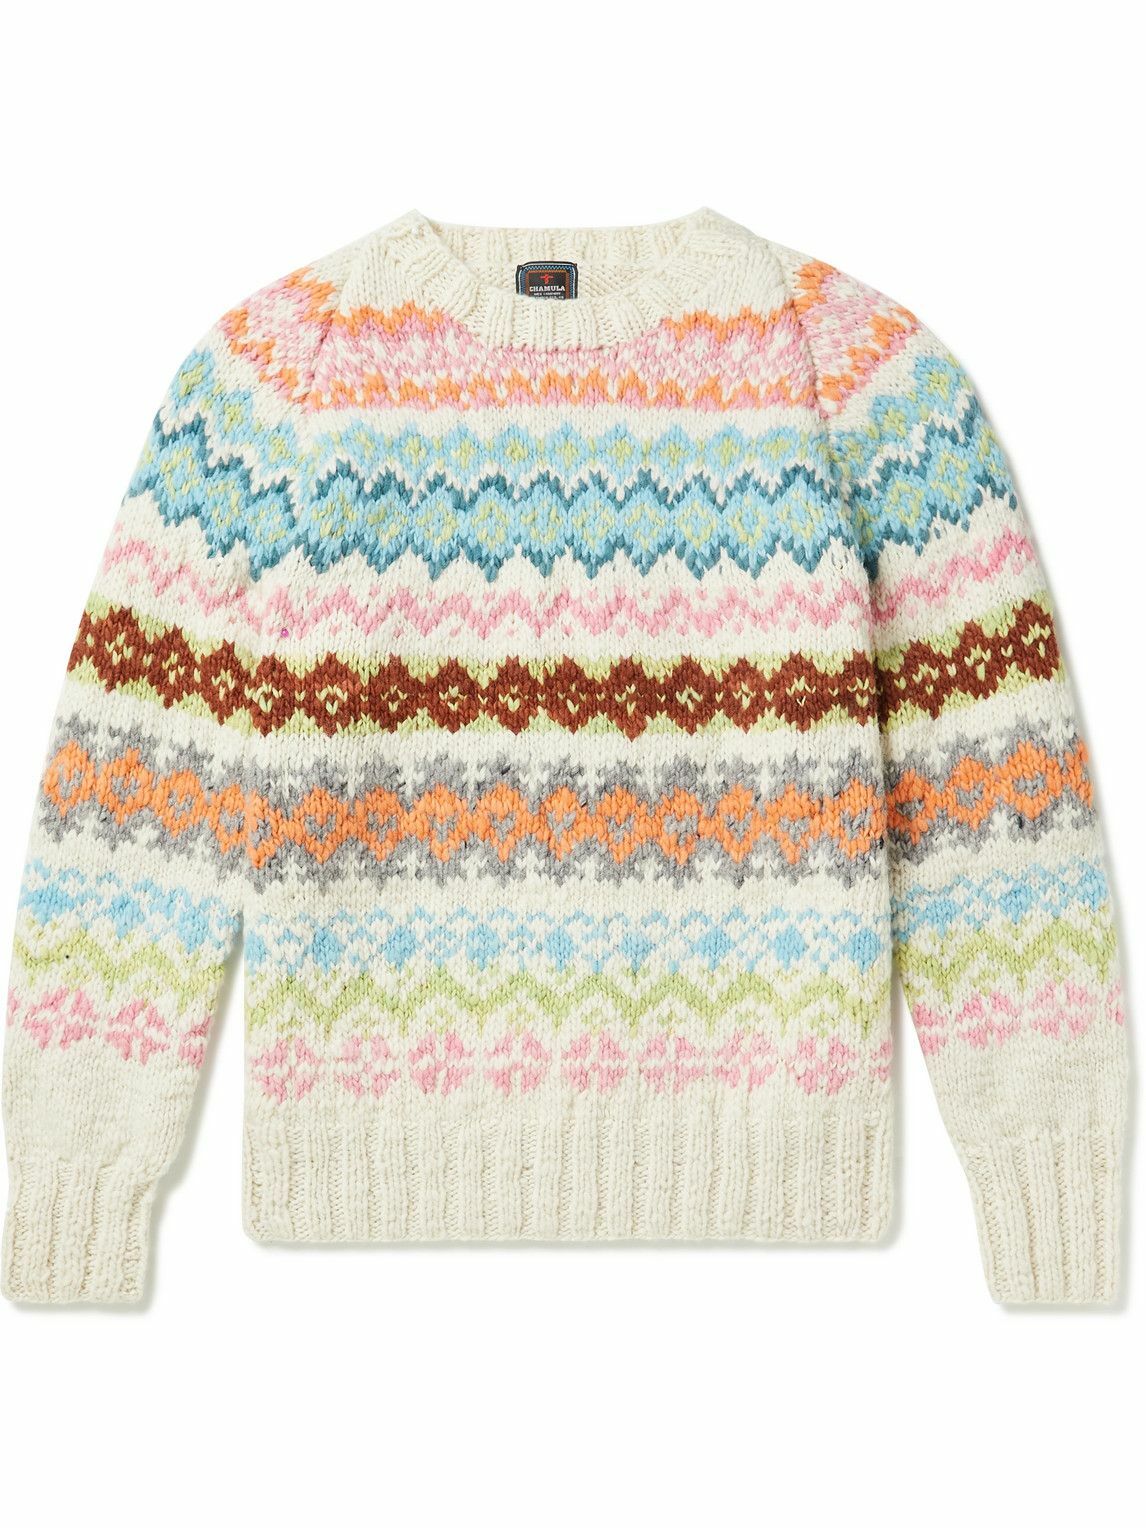 Chamula - Fair Isle Merino Wool Sweater - Multi Chamula